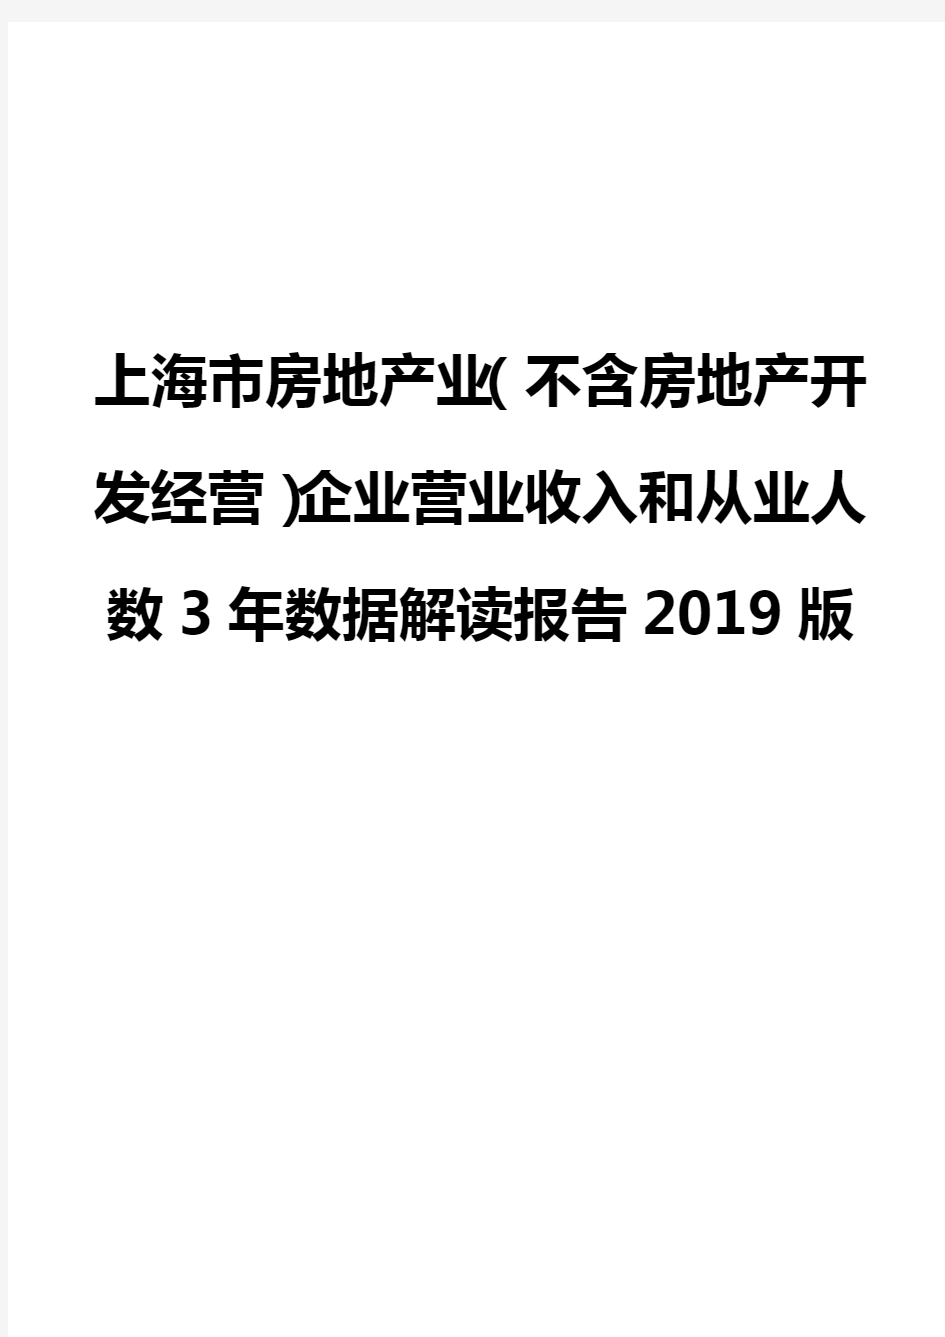 上海市房地产业(不含房地产开发经营)企业营业收入和从业人数3年数据解读报告2019版